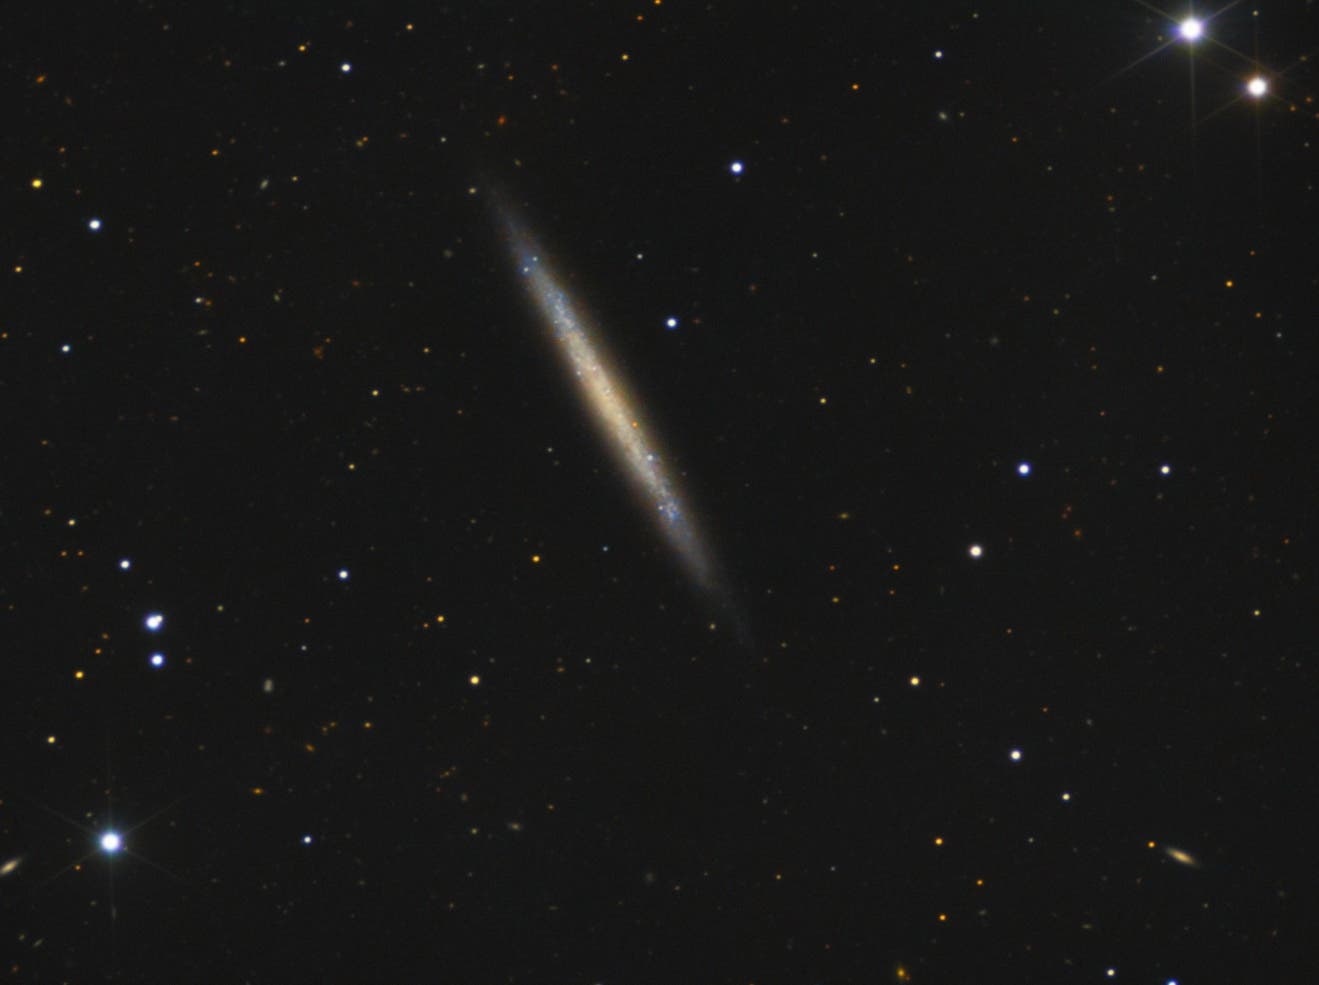 NGC 5023